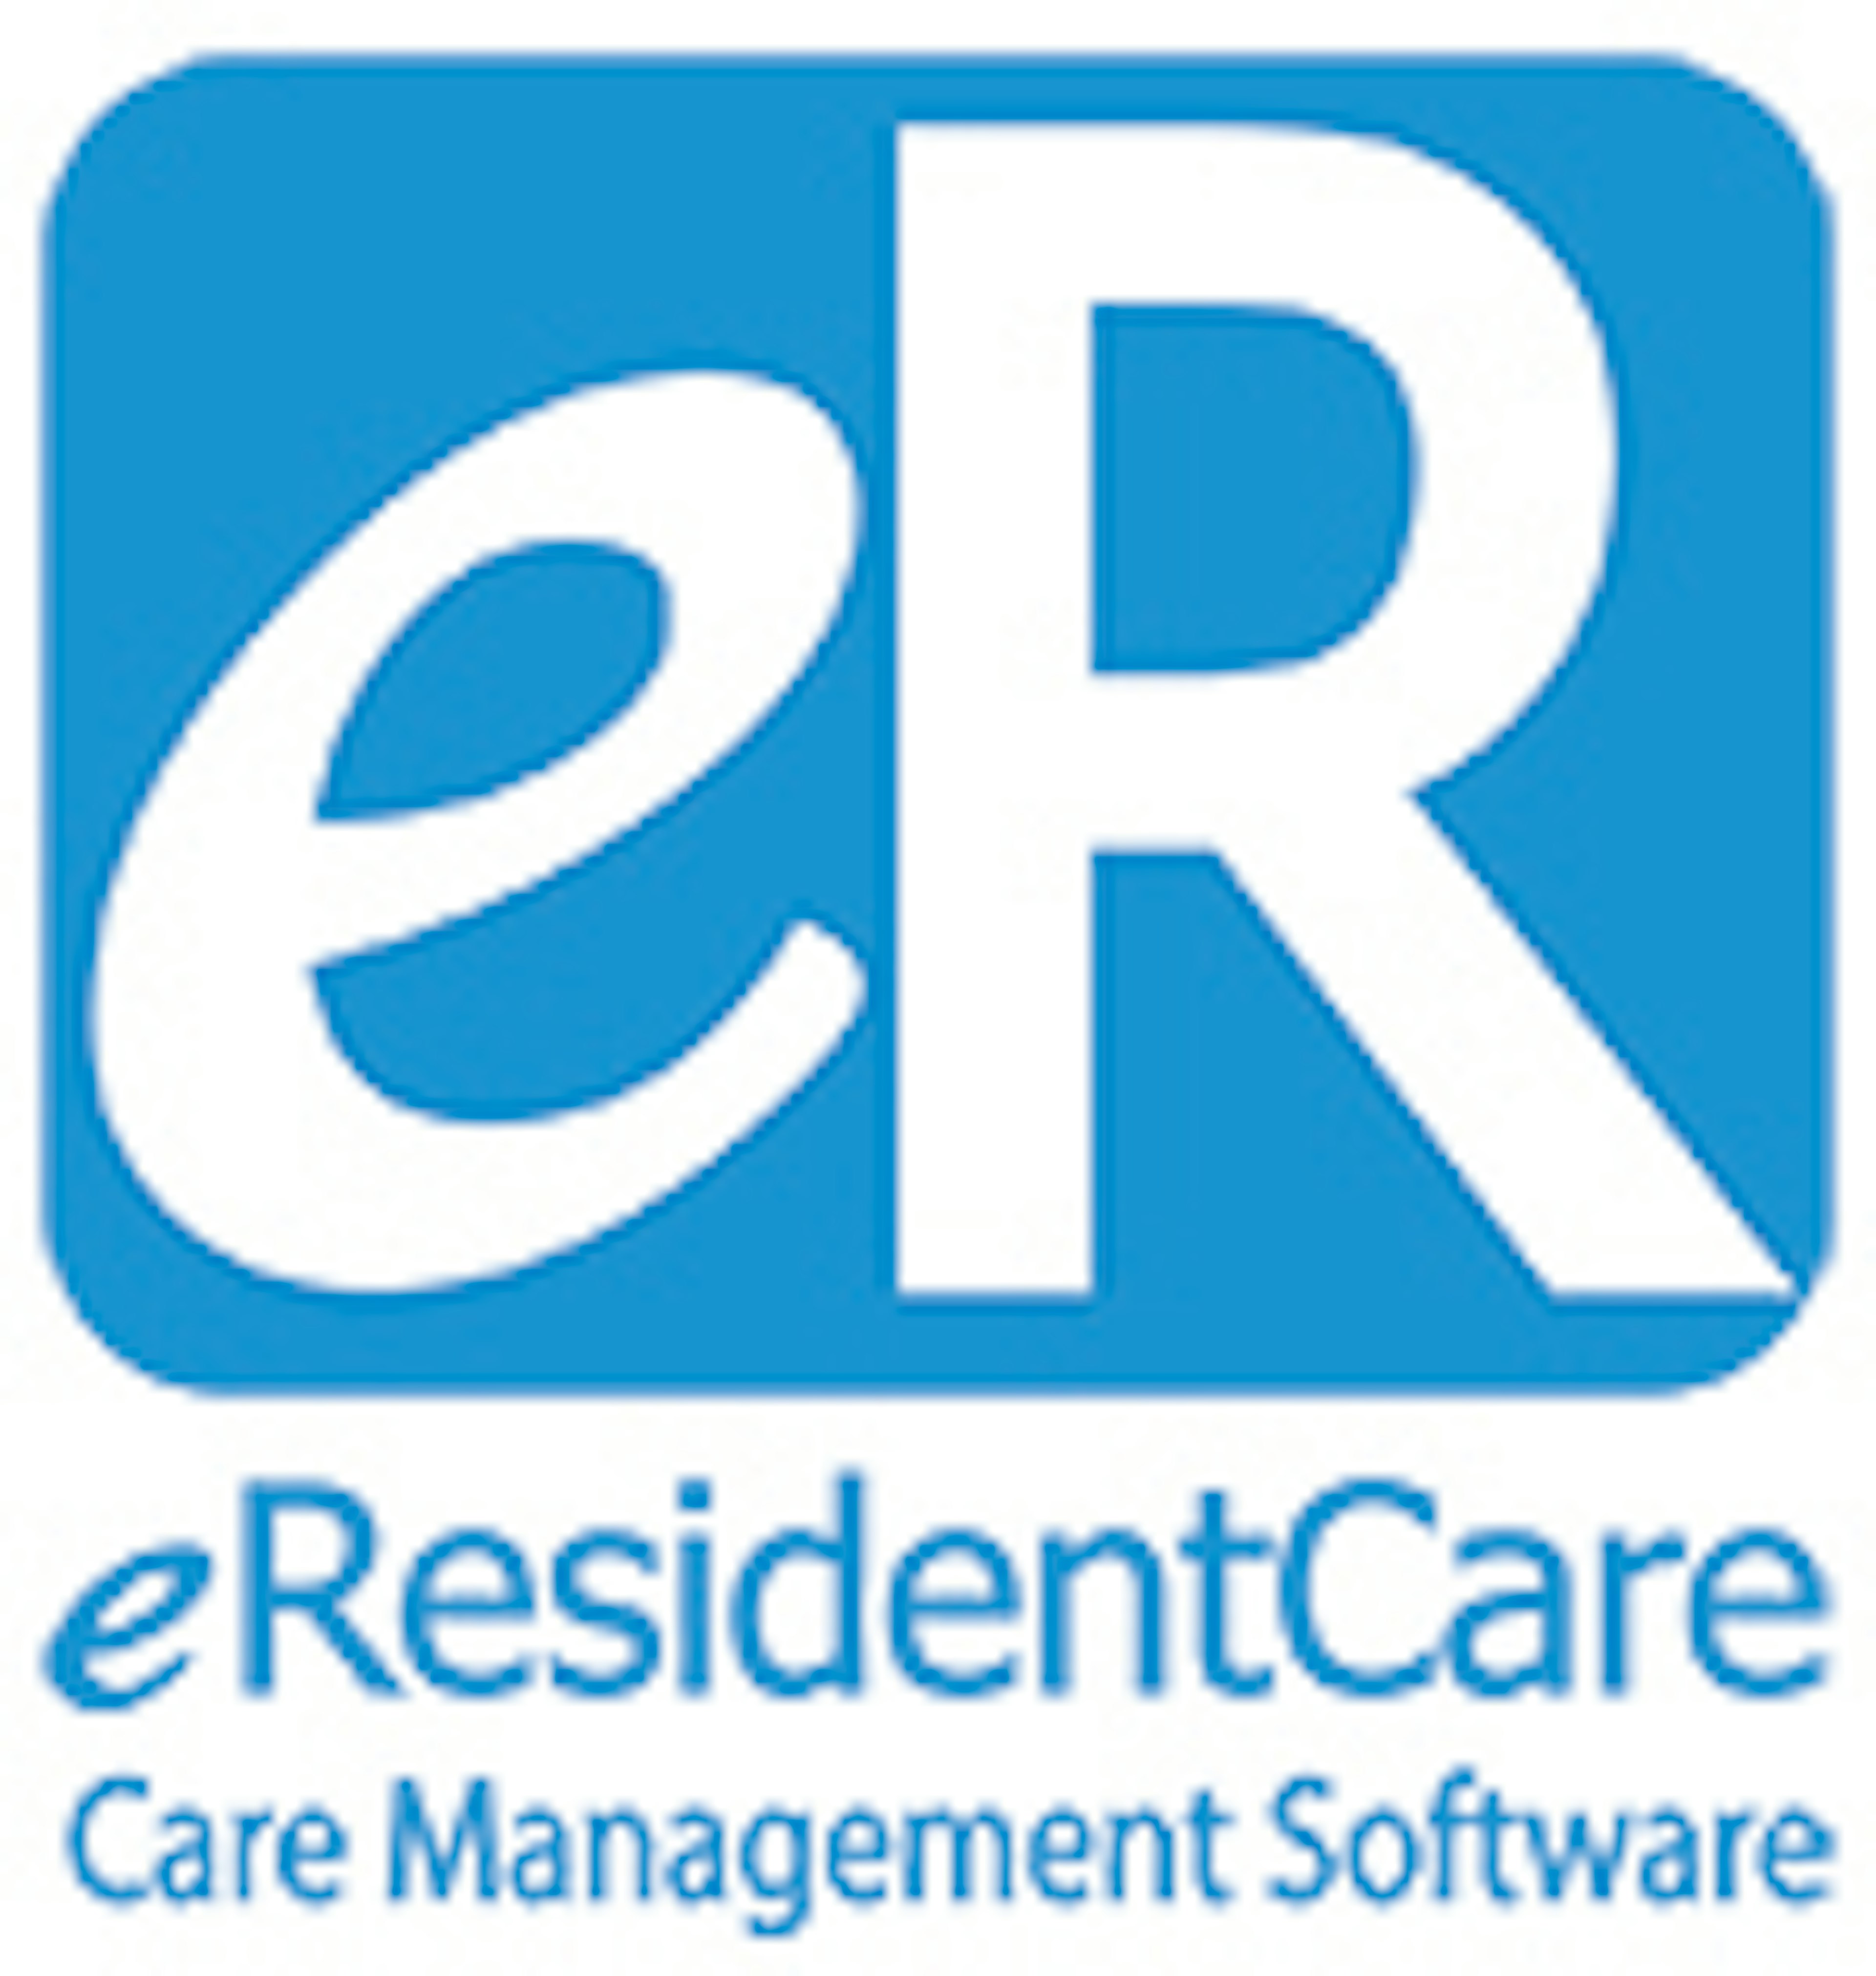 eResidentCare Logo